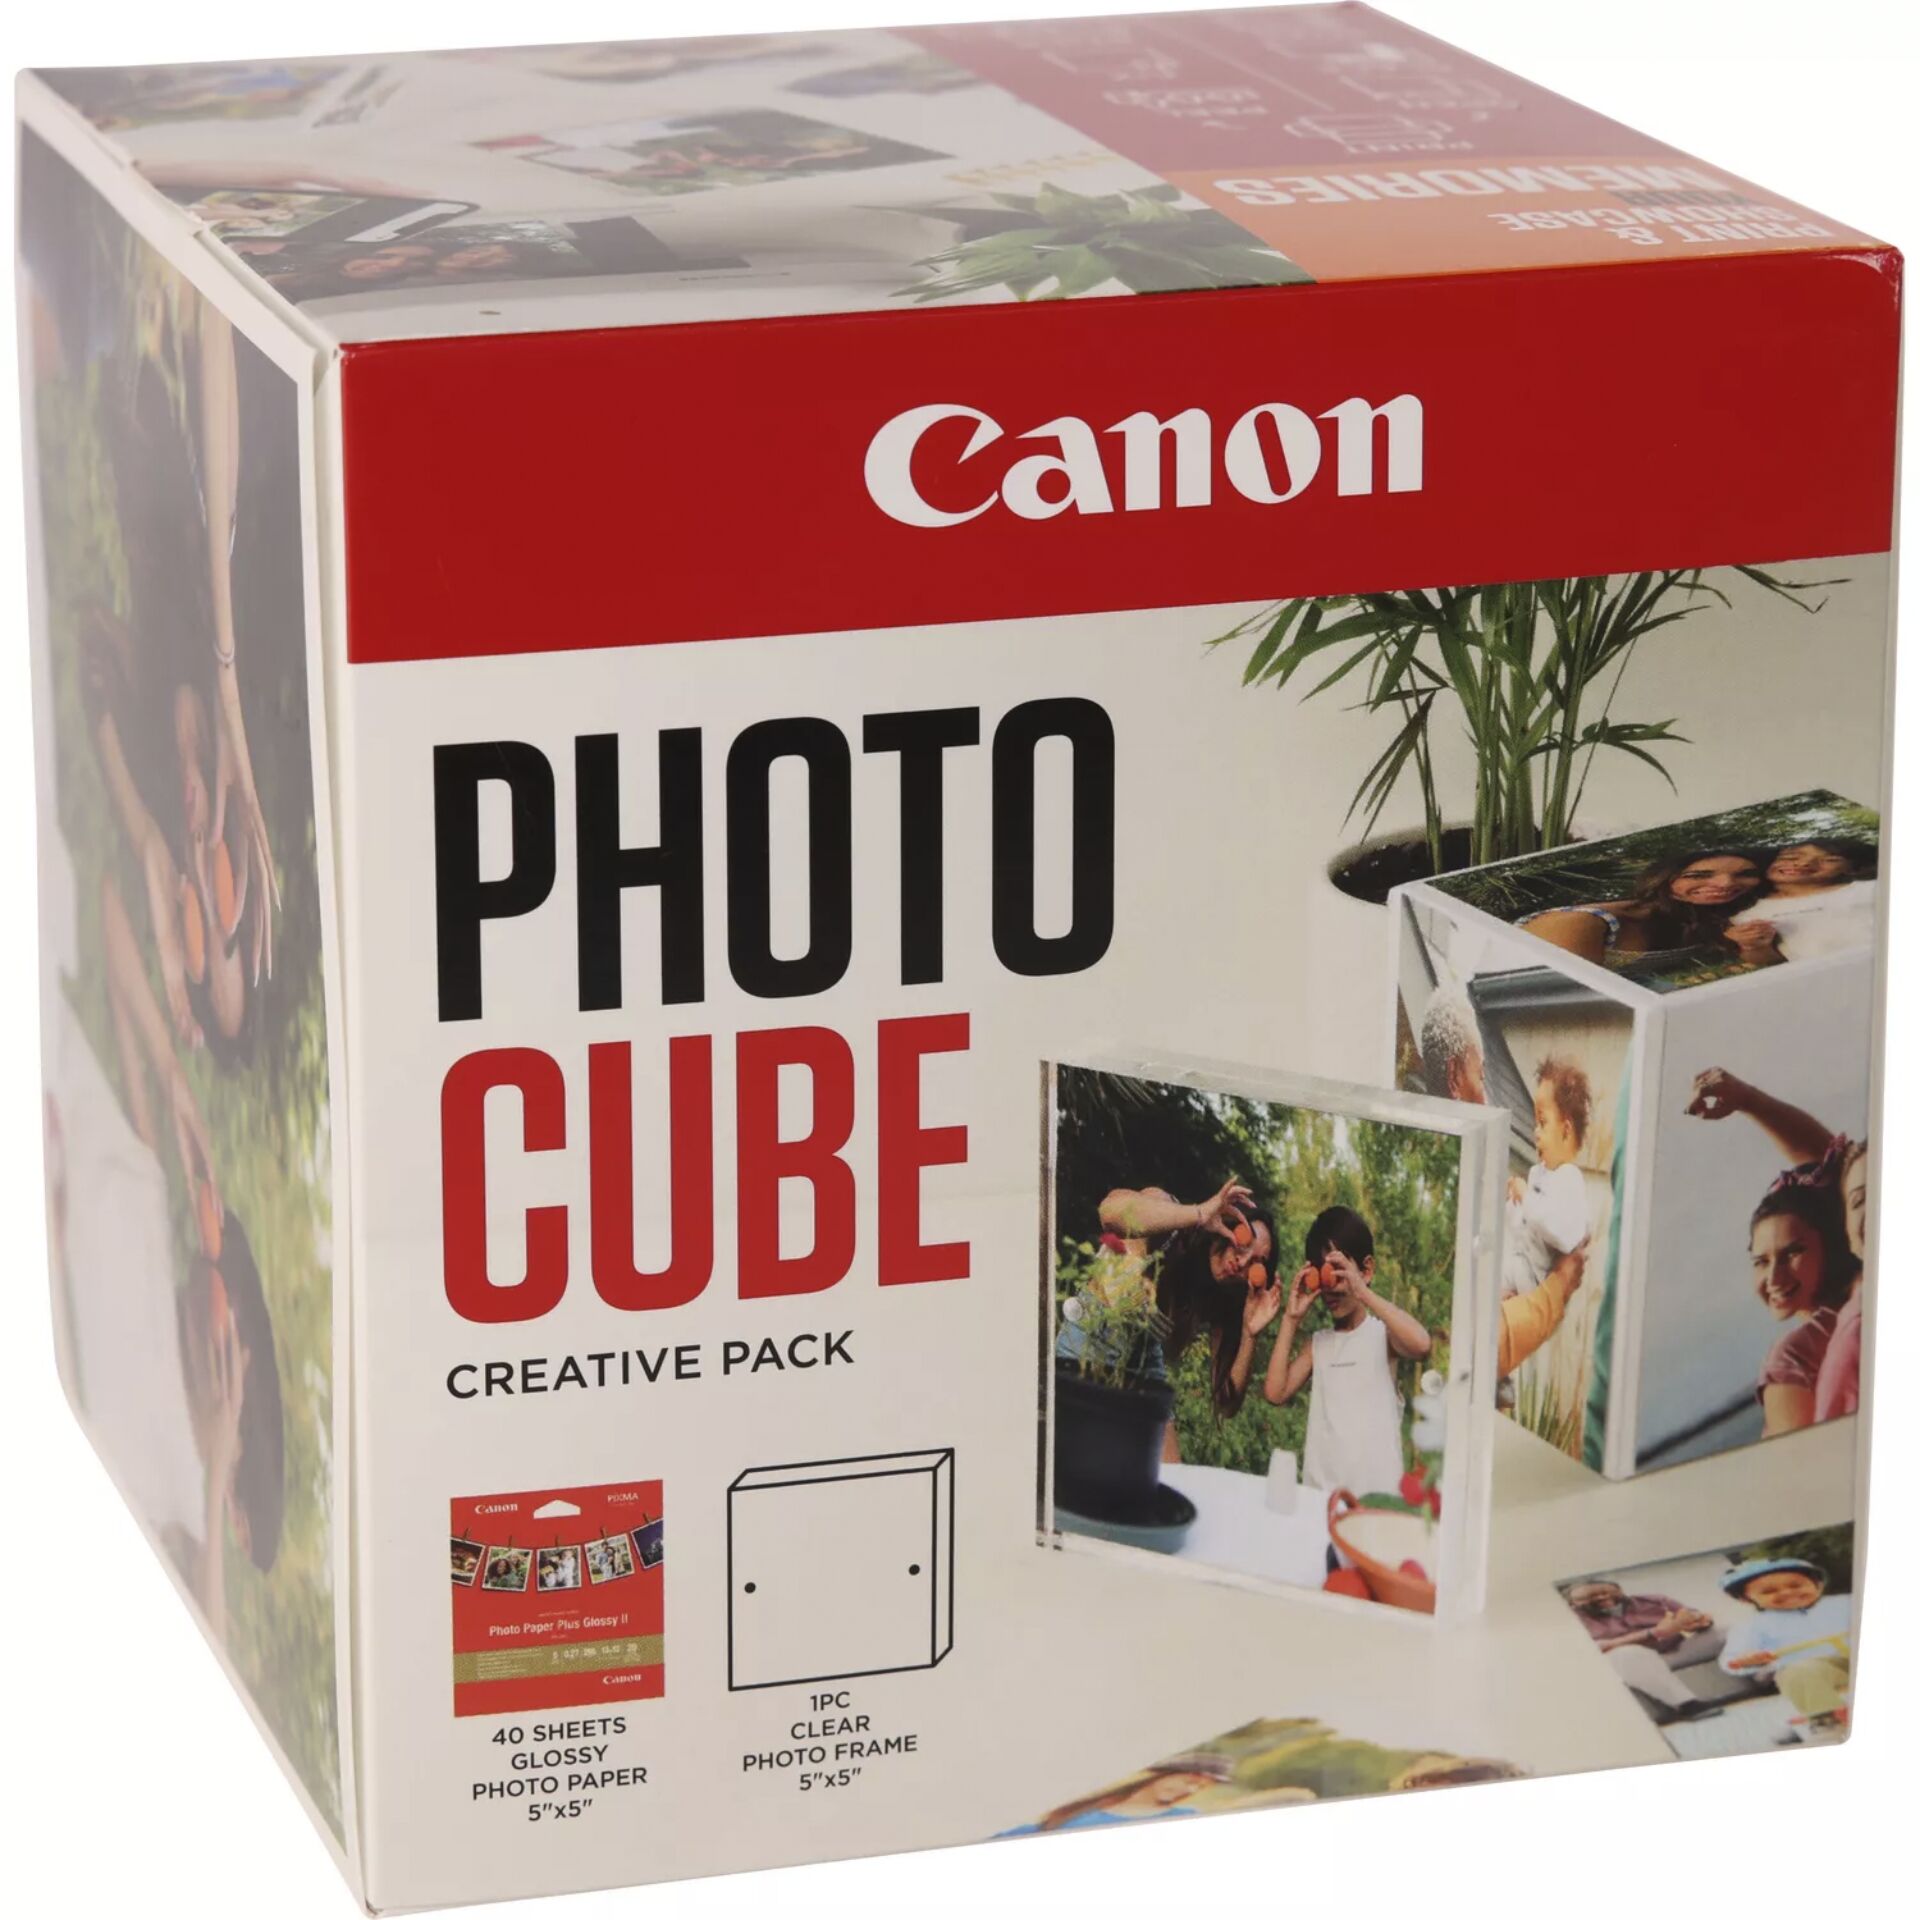 Canon PP-201 13x13 cm Photo Cube pacch.creativo bia. aranc.